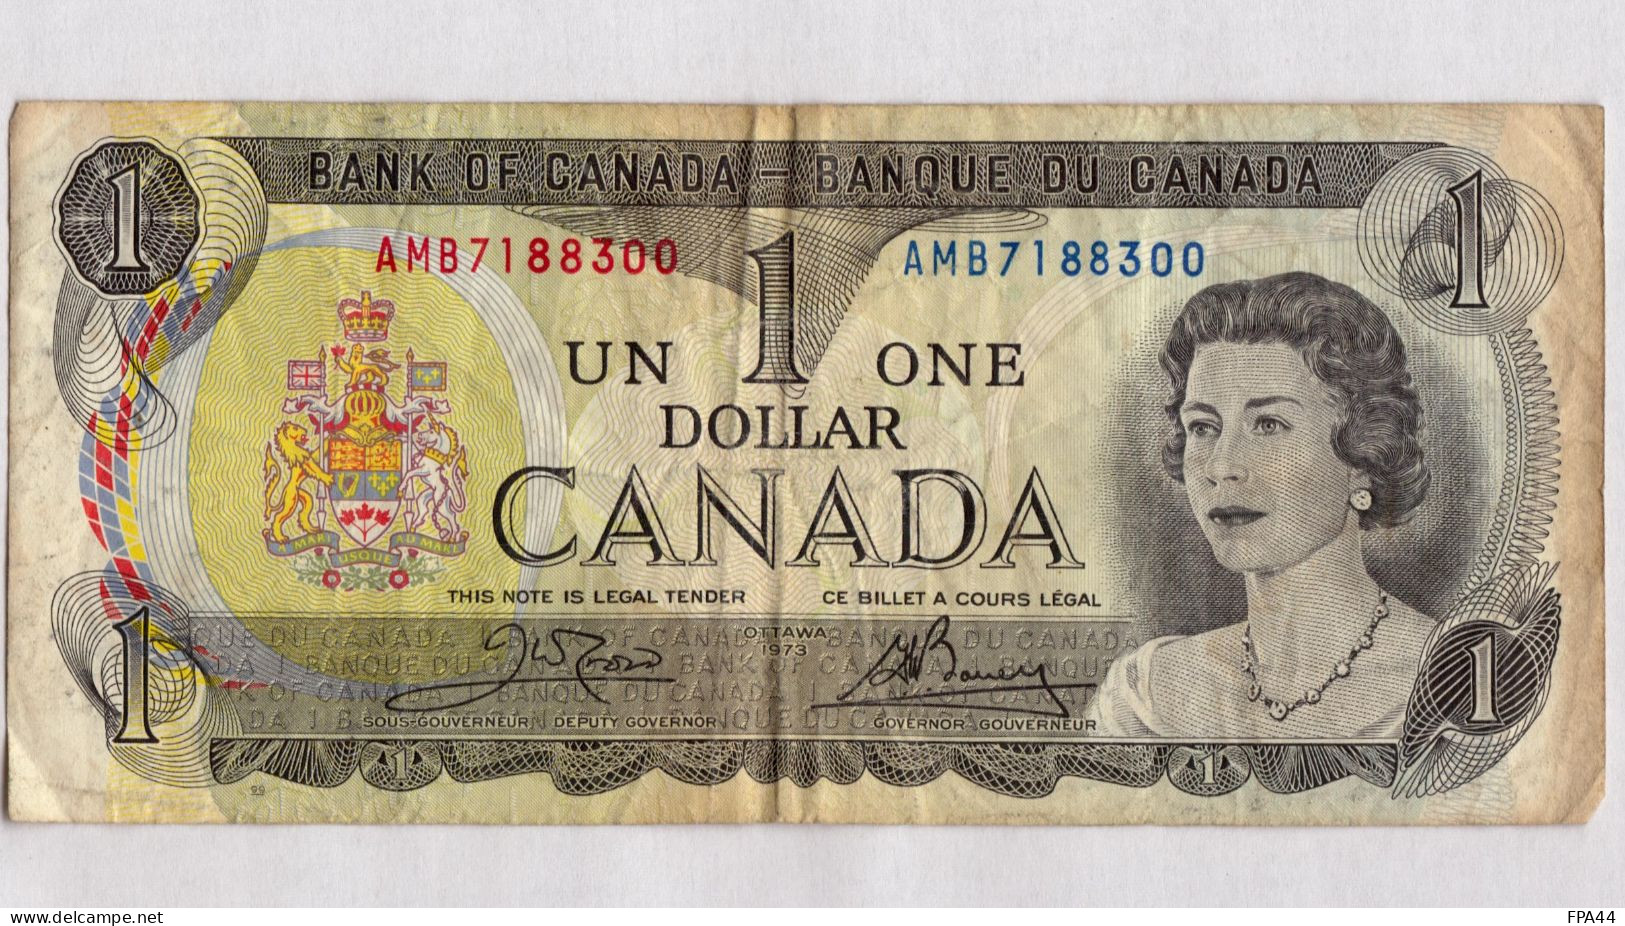 CANADA  1 DOLLAR $  OTTAWA 1973 BANQUE DU CANADA  BANK OF CANADA - Canada